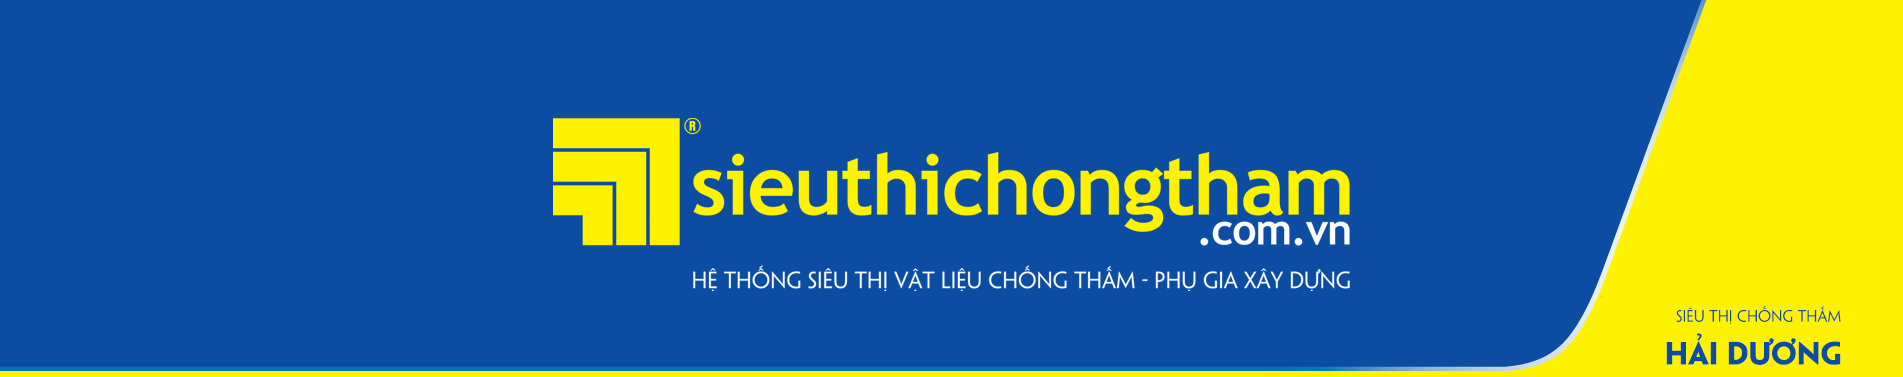 Sieu Thi Chong Tham Hai Duong